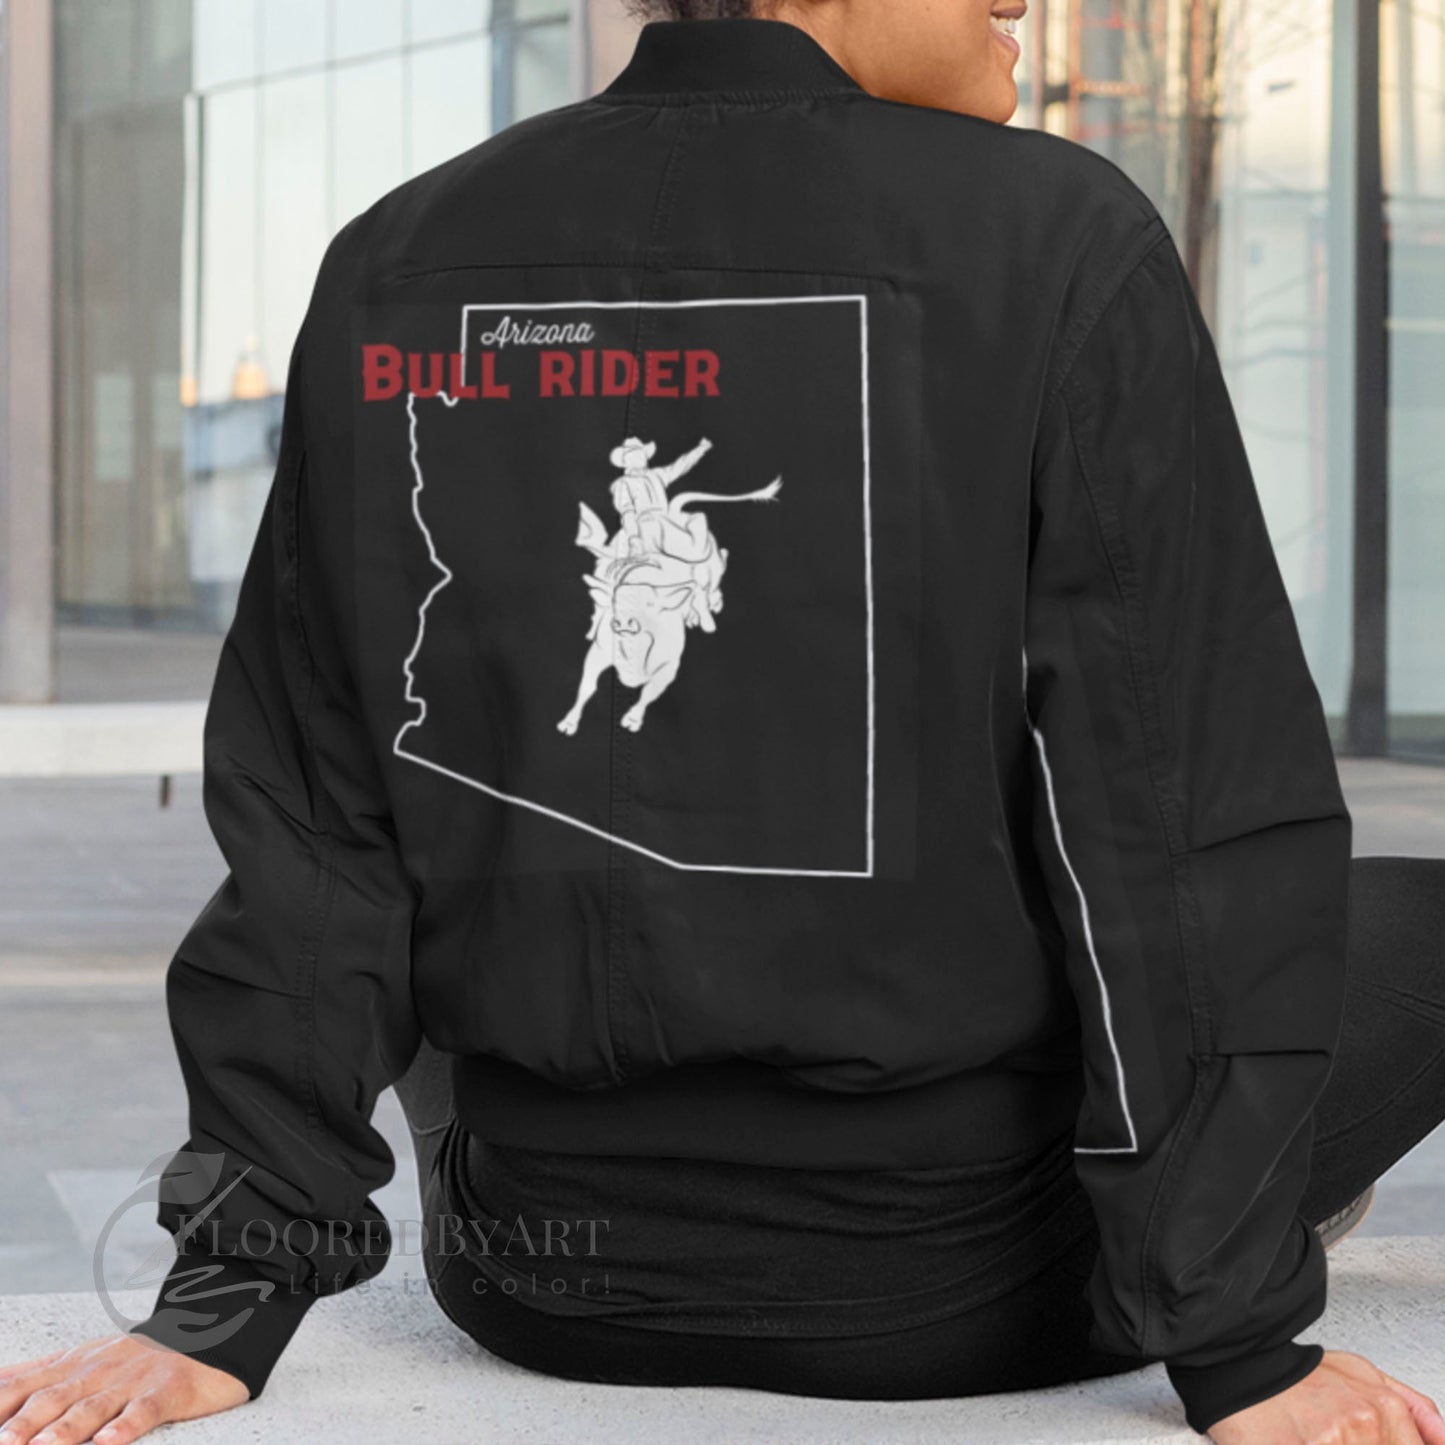 Custom Bull Riding Bomber Jacket With State Outline on the Back, Bull Rider Gift - FlooredByArt